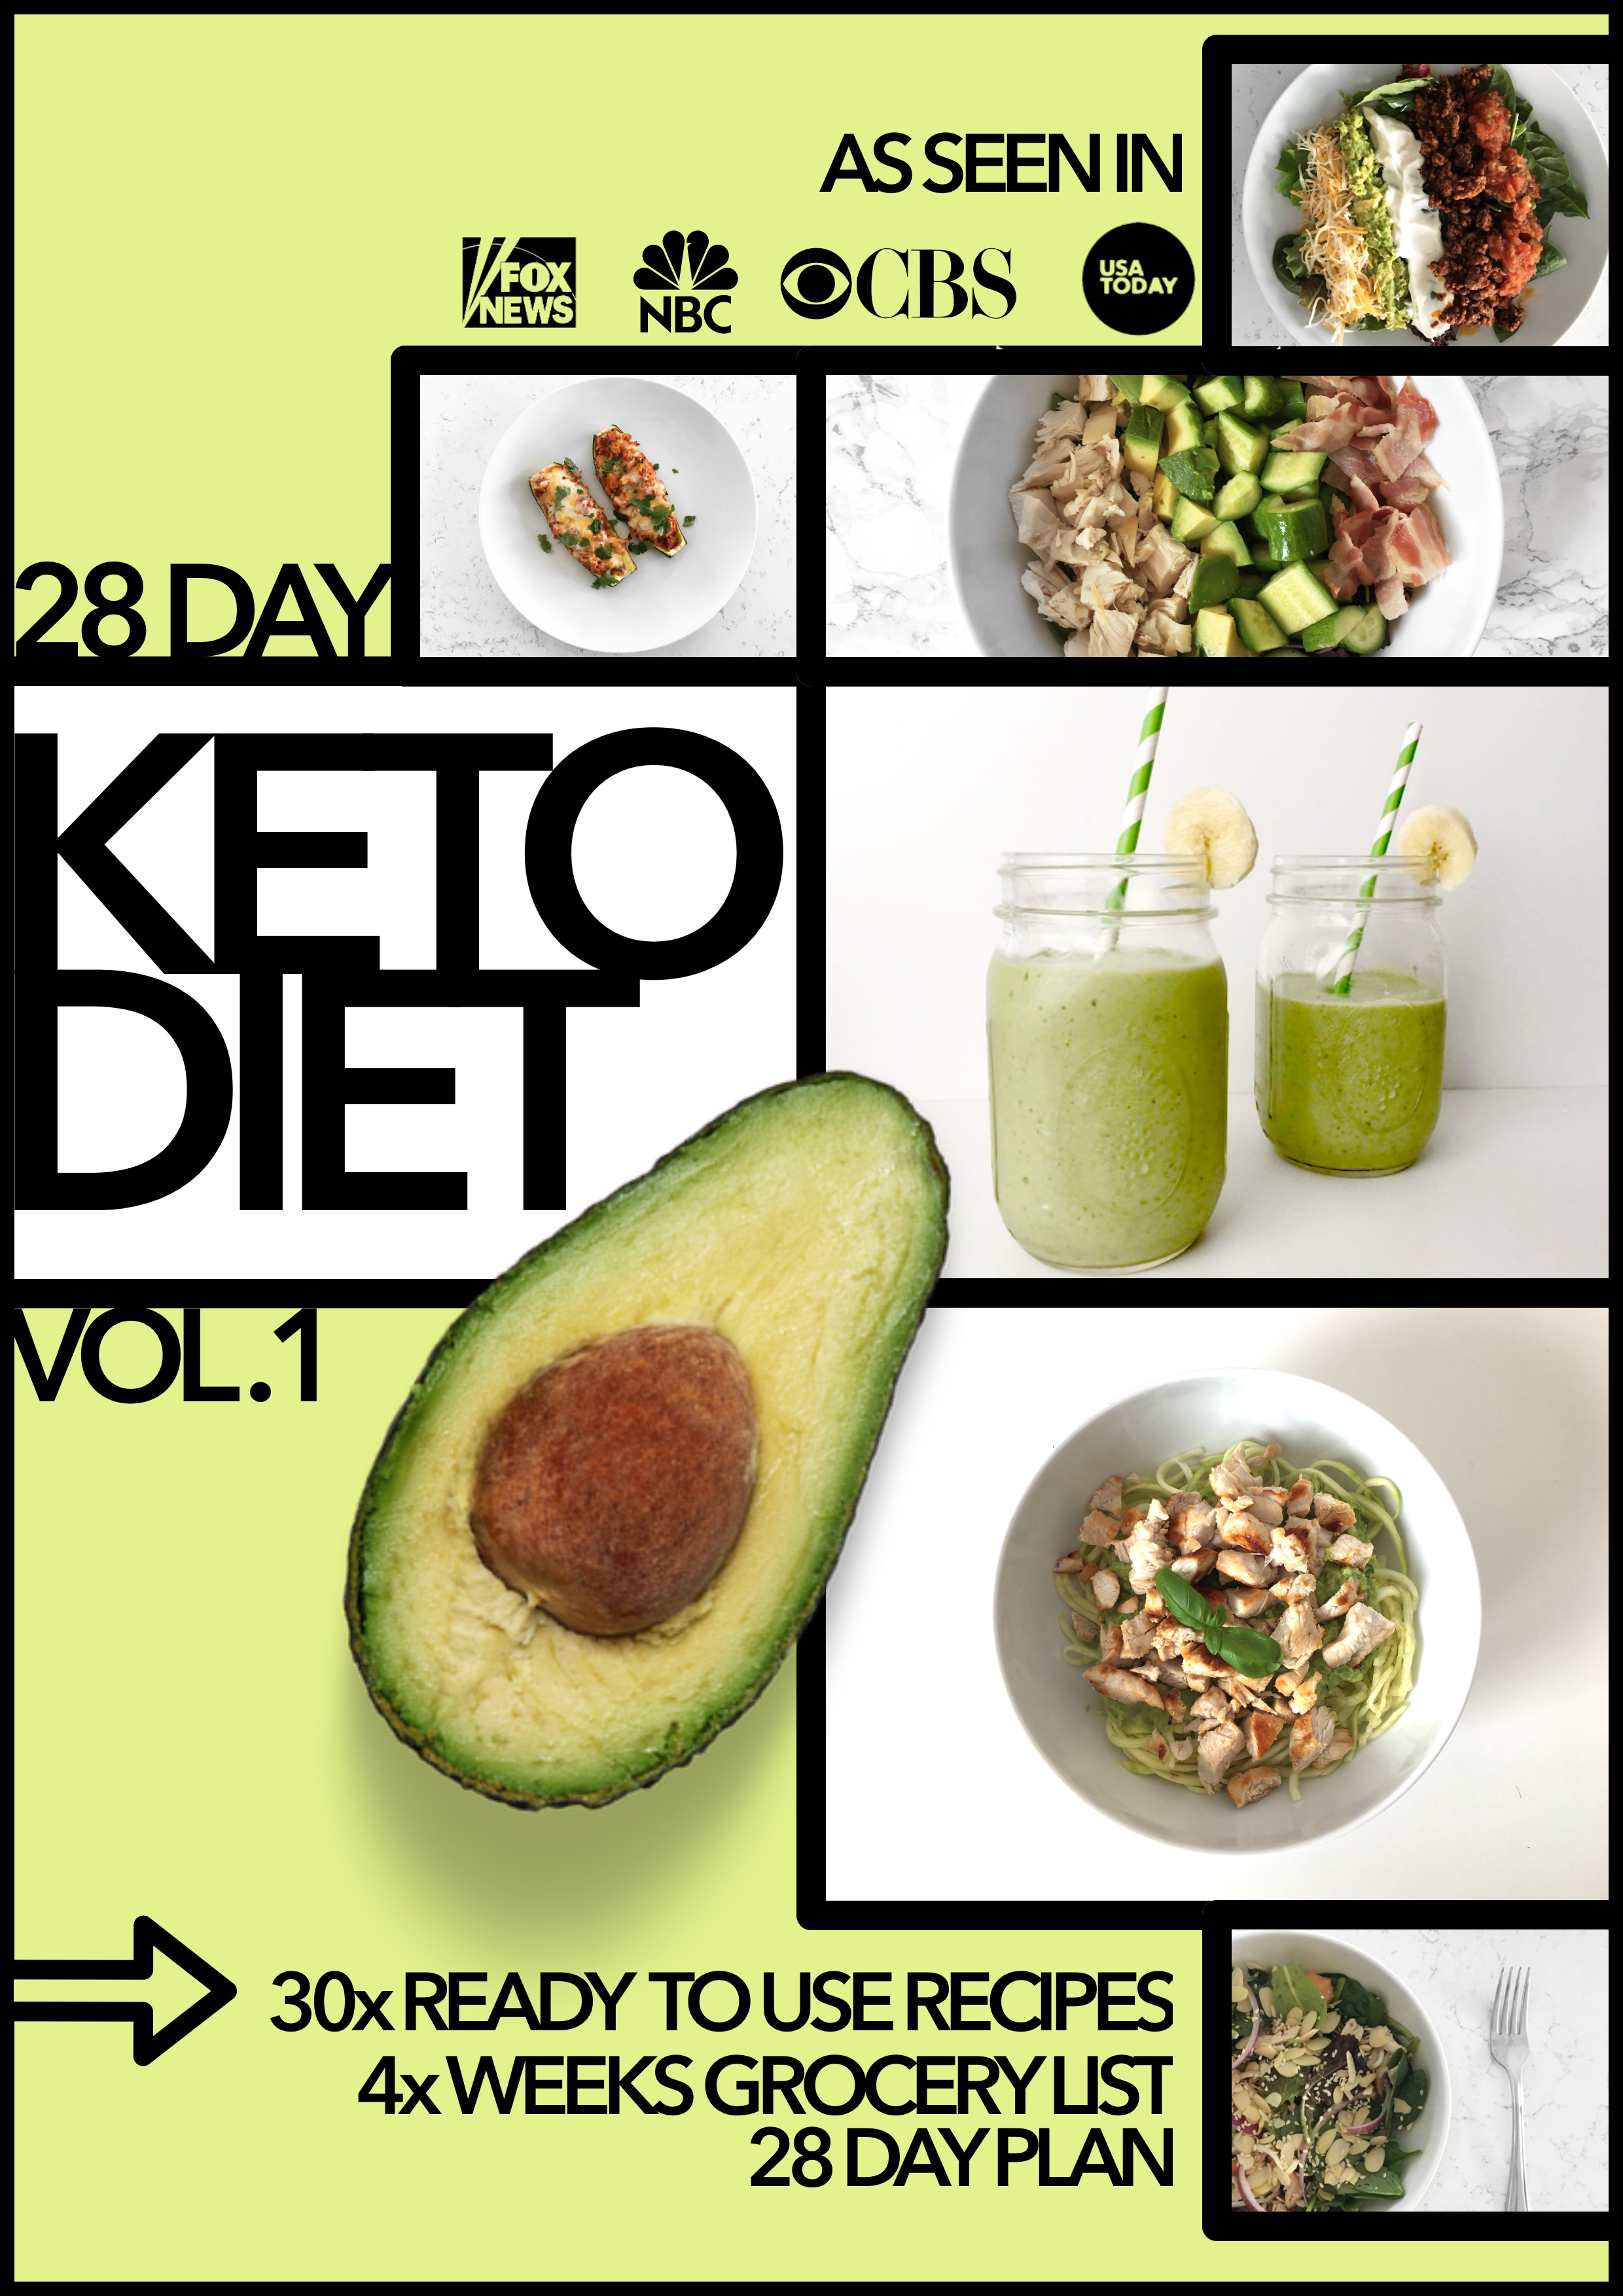 28 Day Keto Diet Vol. 1